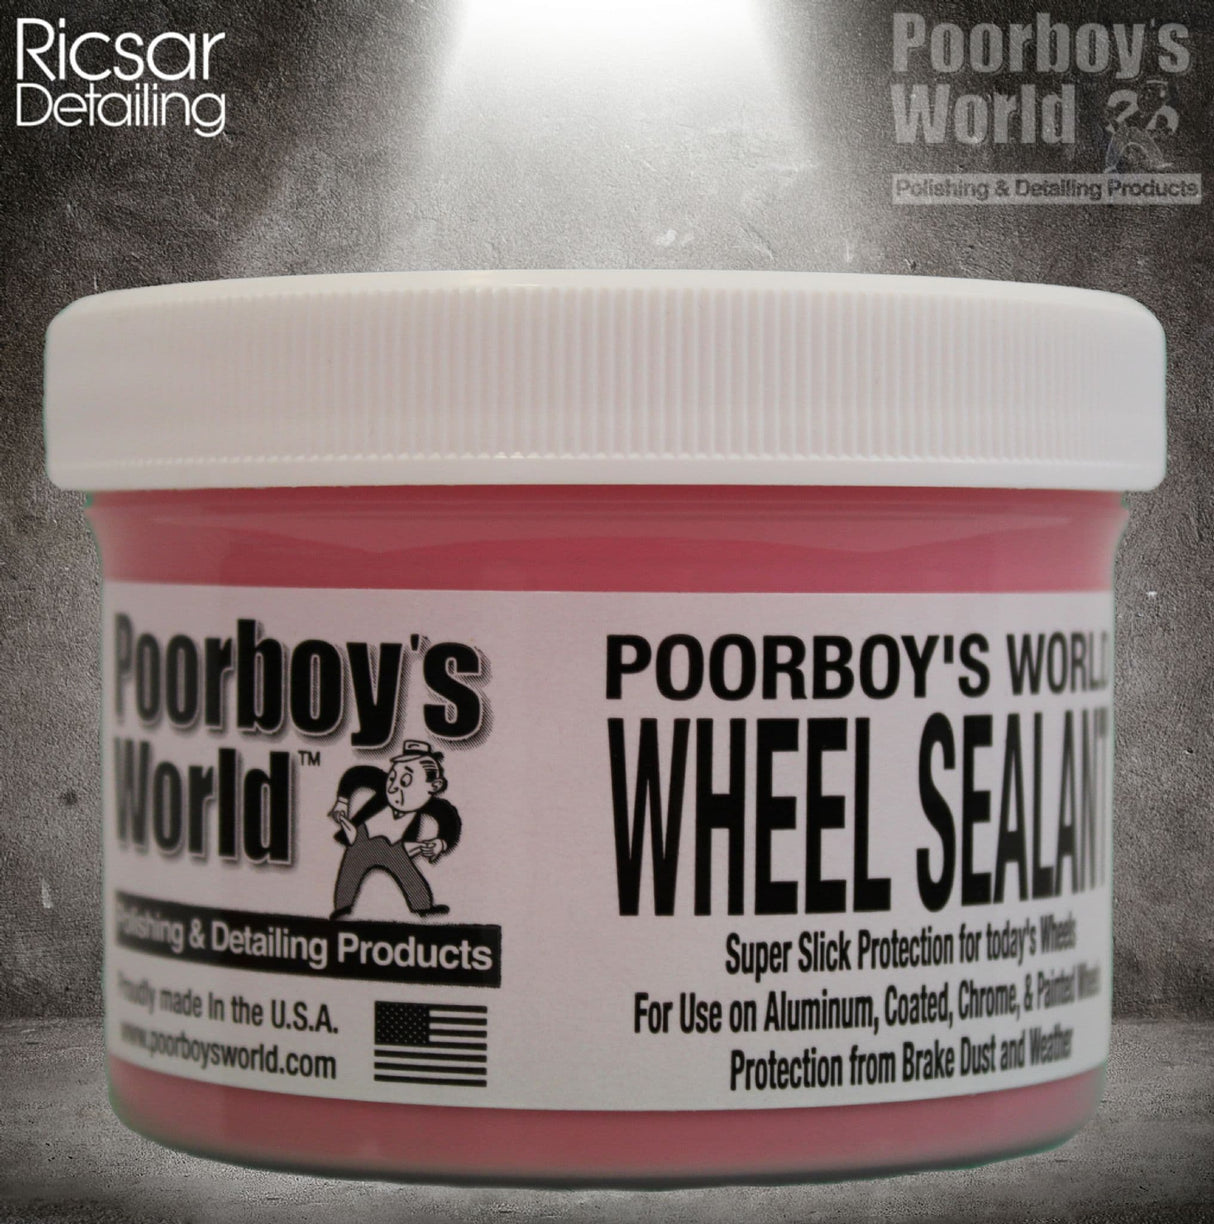 Poorboy's Wheel Sealant